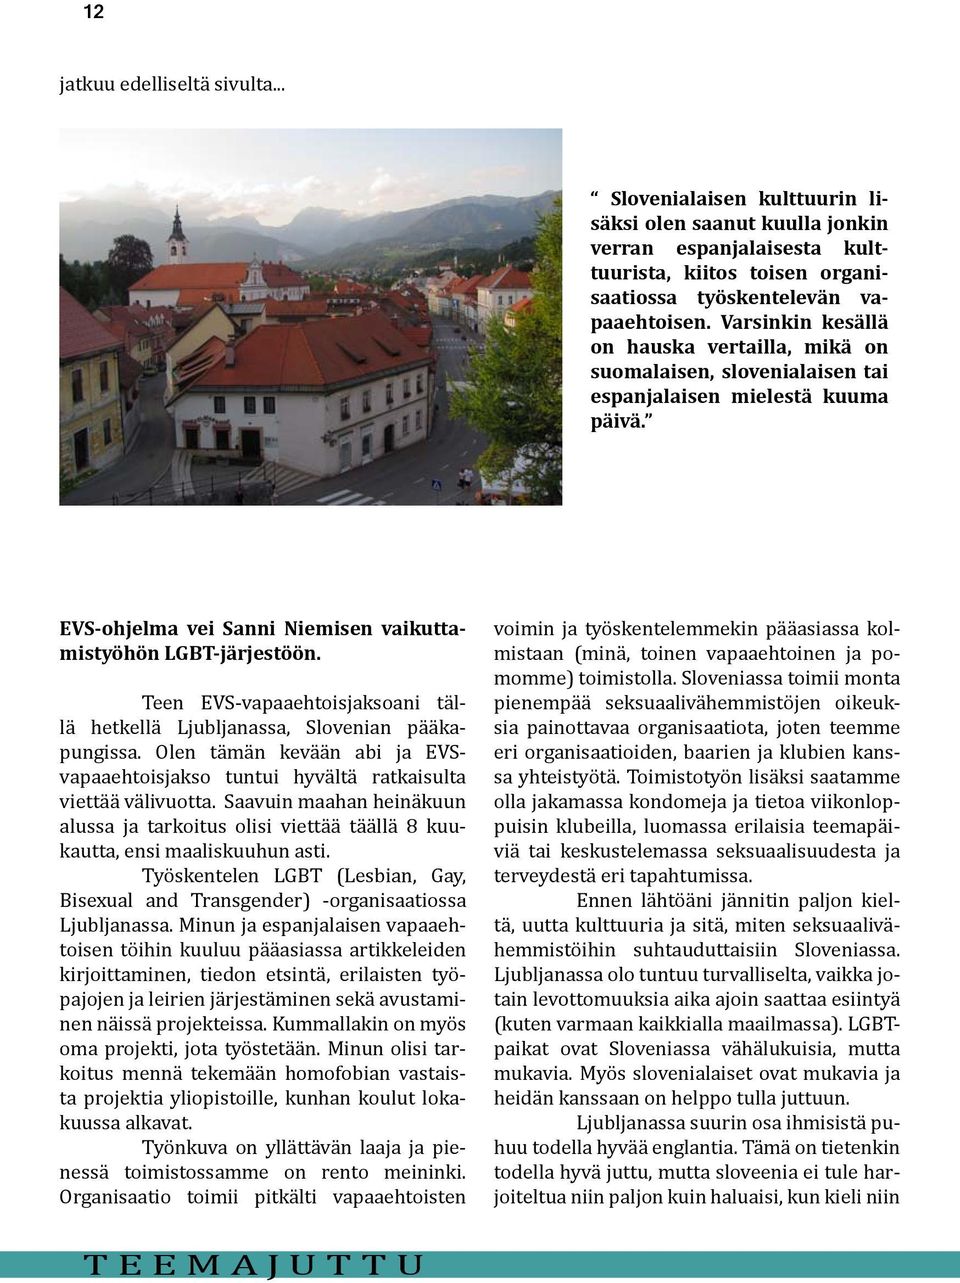 Teen EVS-vapaaehtoisjaksoani tällä hetkellä Ljubljanassa, Slovenian pääkapungissa. Olen tämän kevään abi ja EVSvapaaehtoisjakso tuntui hyvältä ratkaisulta viettää välivuotta.